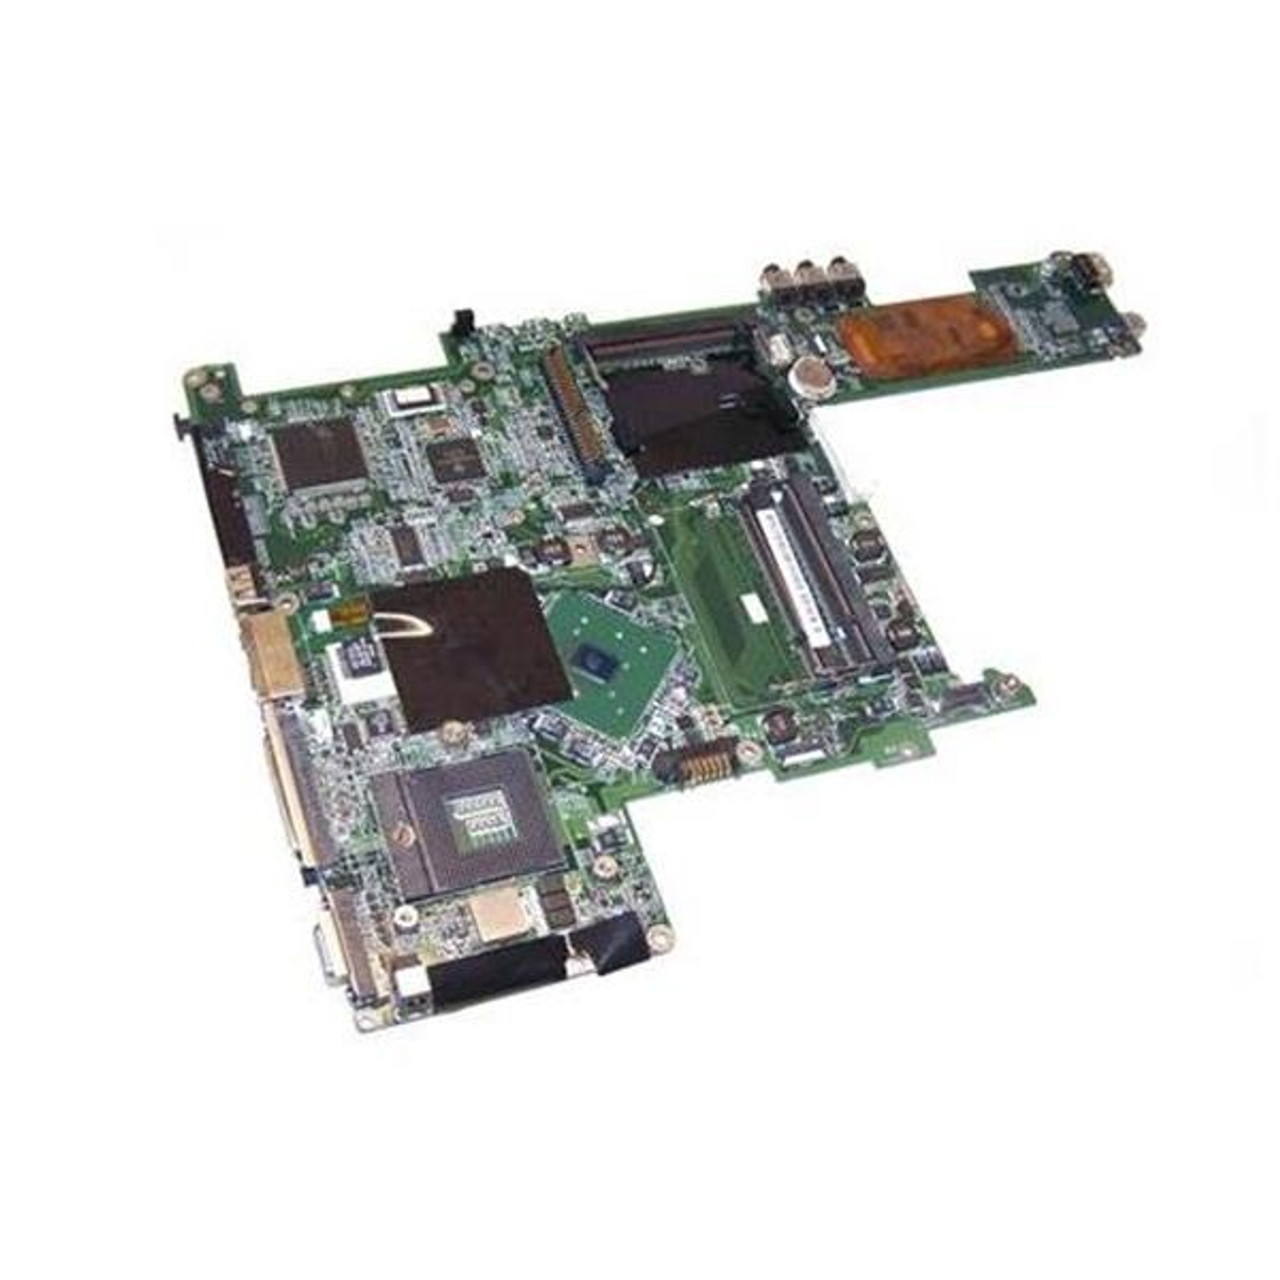 695956-601 HP System Board (Motherboard) for EliteBook 8570w Mobile  Workstation Notebook PC (Refurbished)